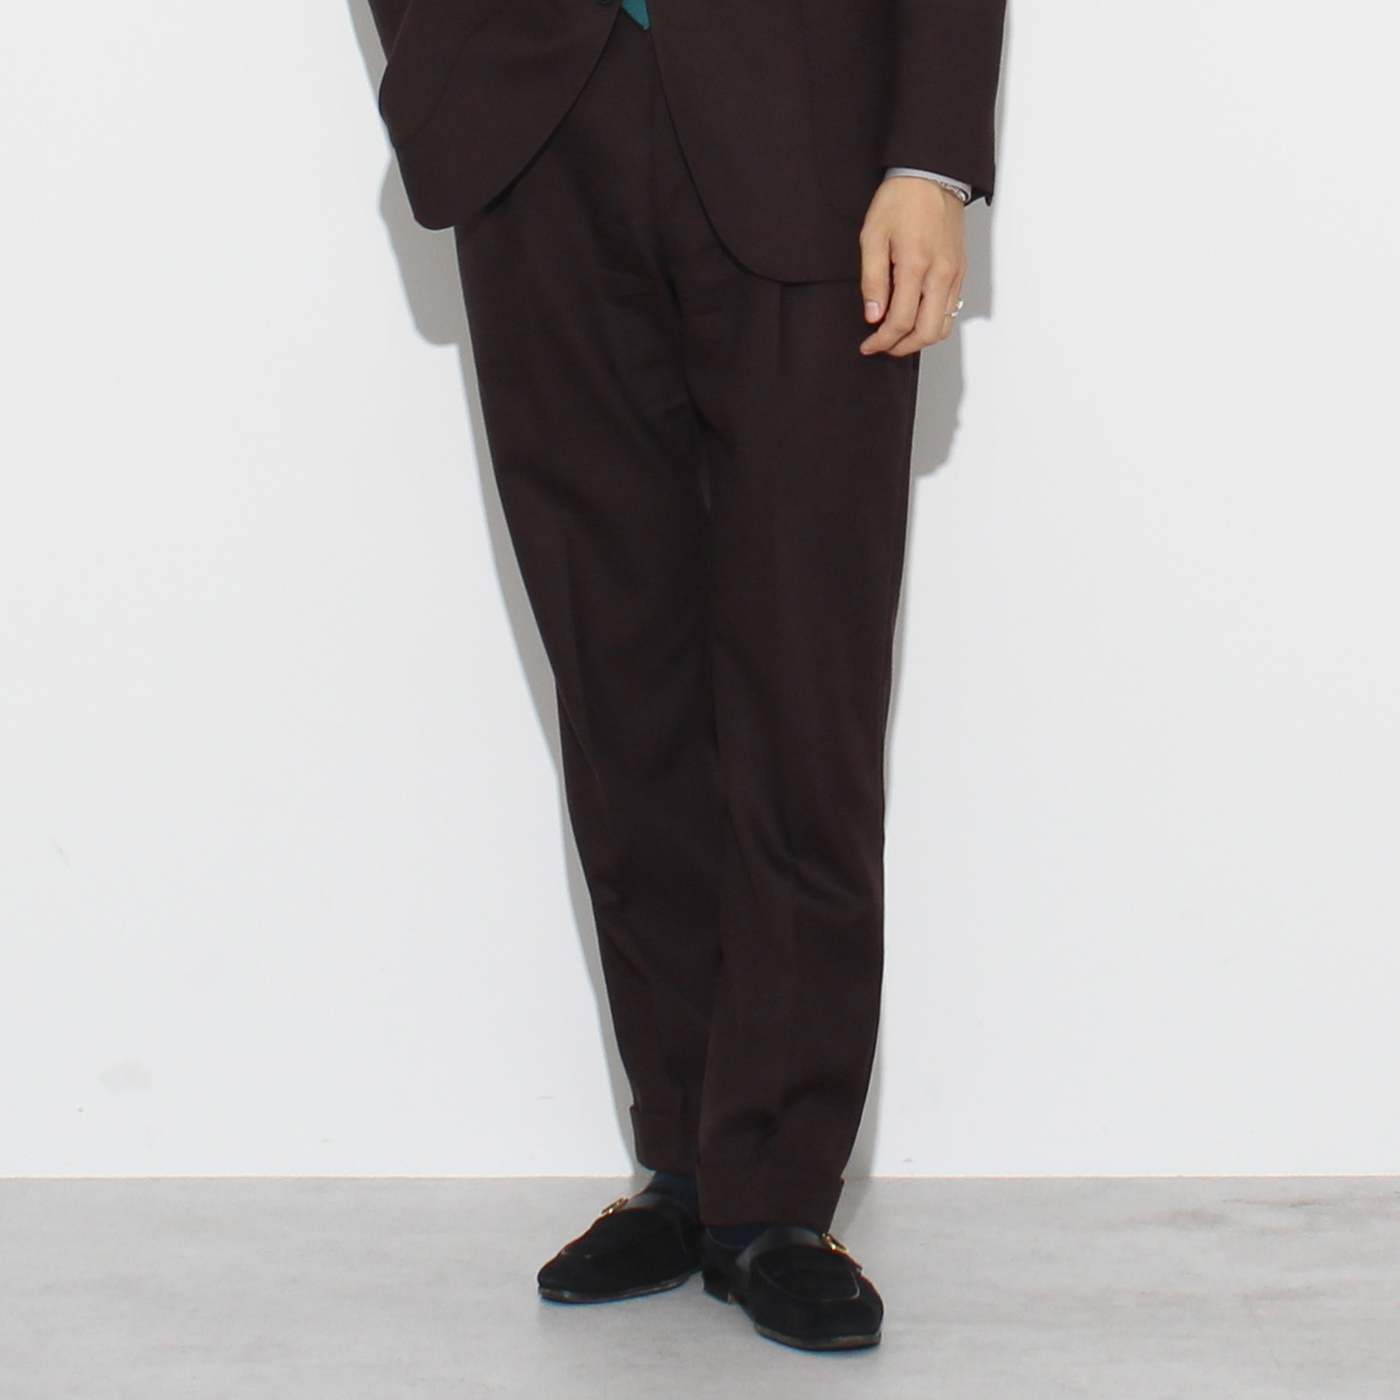 【STAFFコーデ】ブラウンスーツでつくるクラシックスタイル